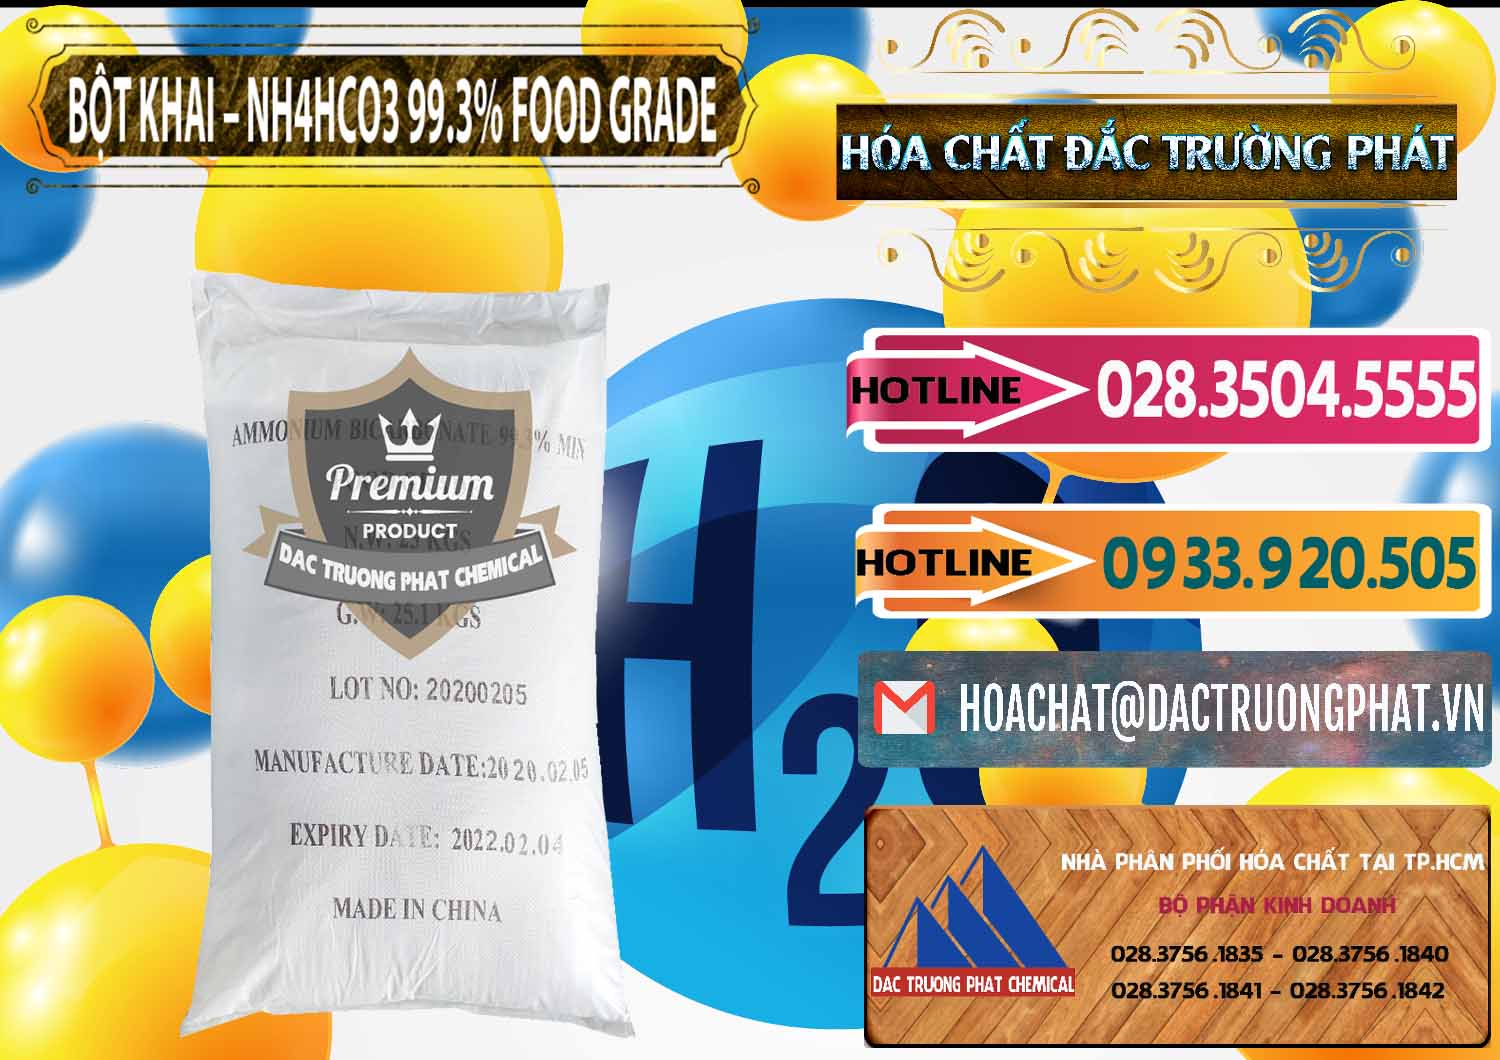 Cty chuyên bán - phân phối Ammonium Bicarbonate – Bột Khai NH4HCO3 Food Grade Trung Quốc China - 0019 - Cty chuyên bán _ cung cấp hóa chất tại TP.HCM - dactruongphat.vn